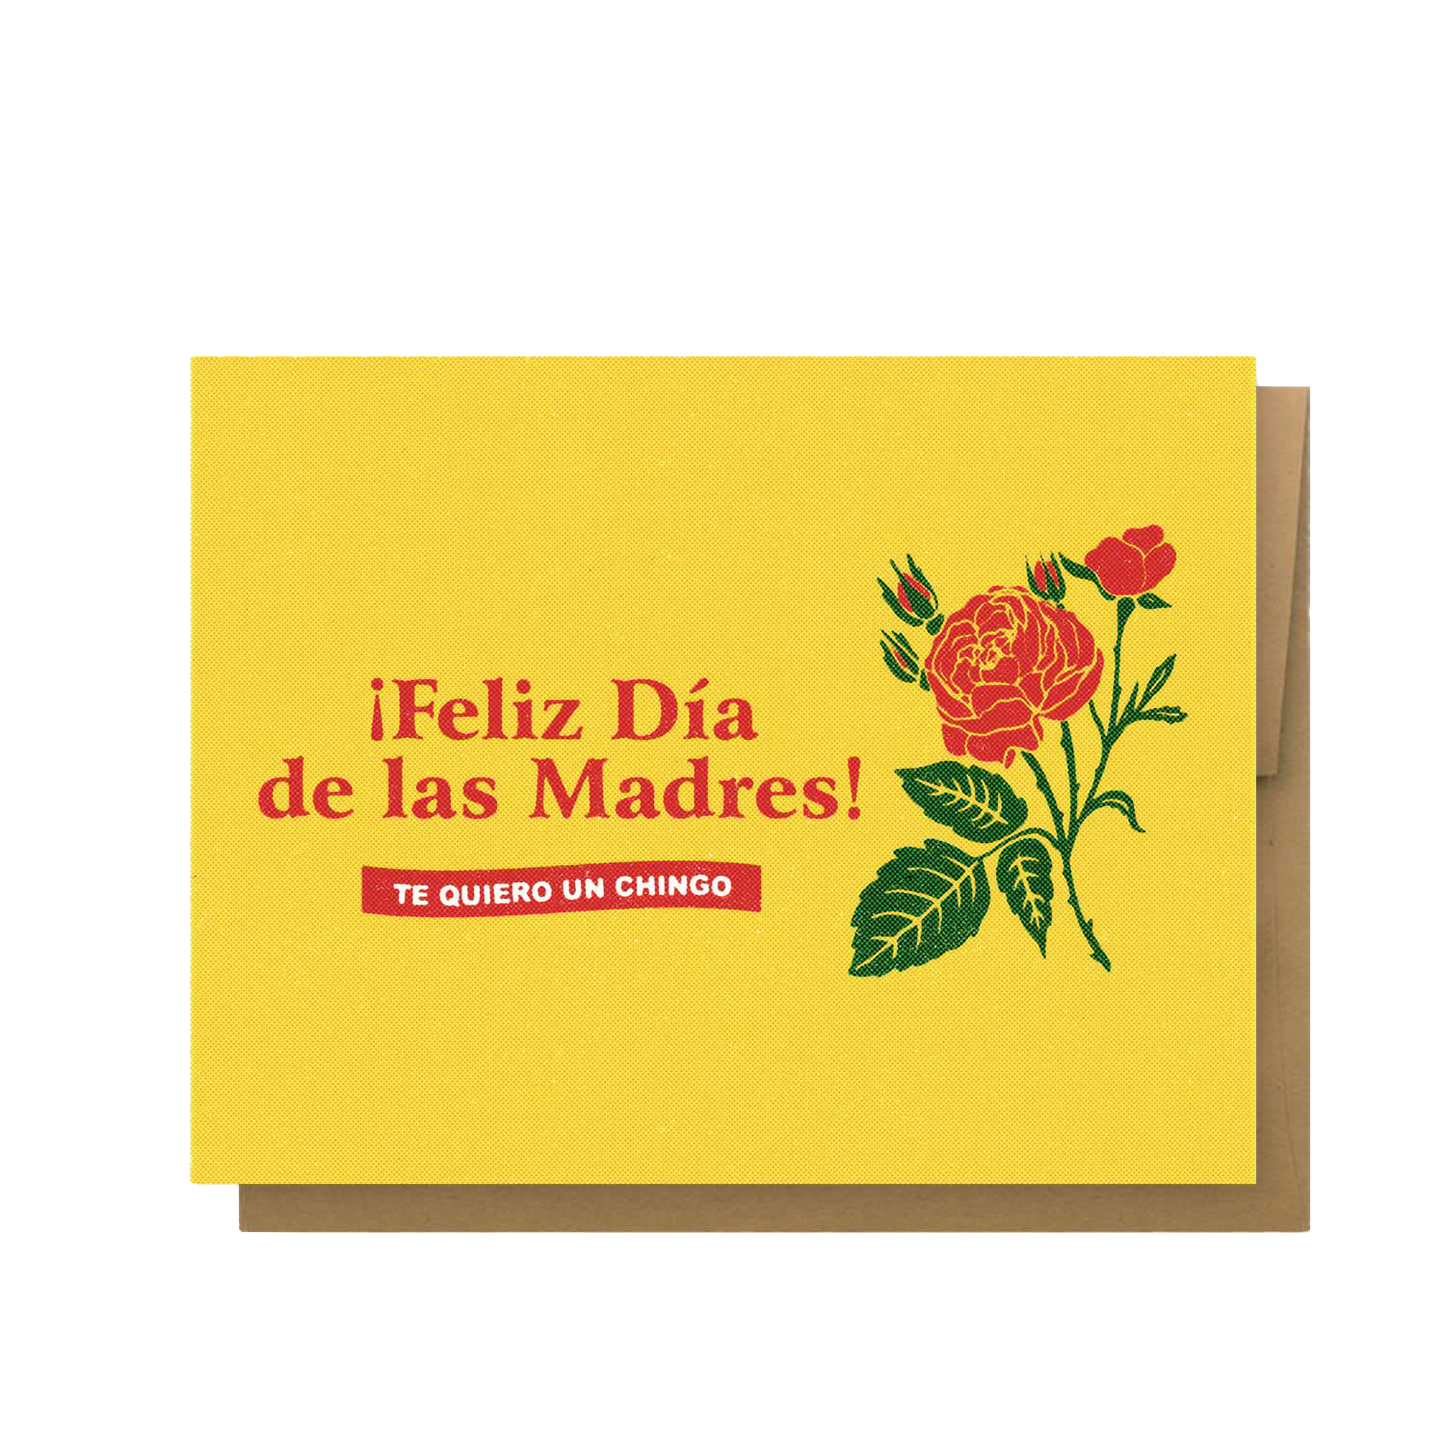 Feliz Dia de las Madres Greeting Card